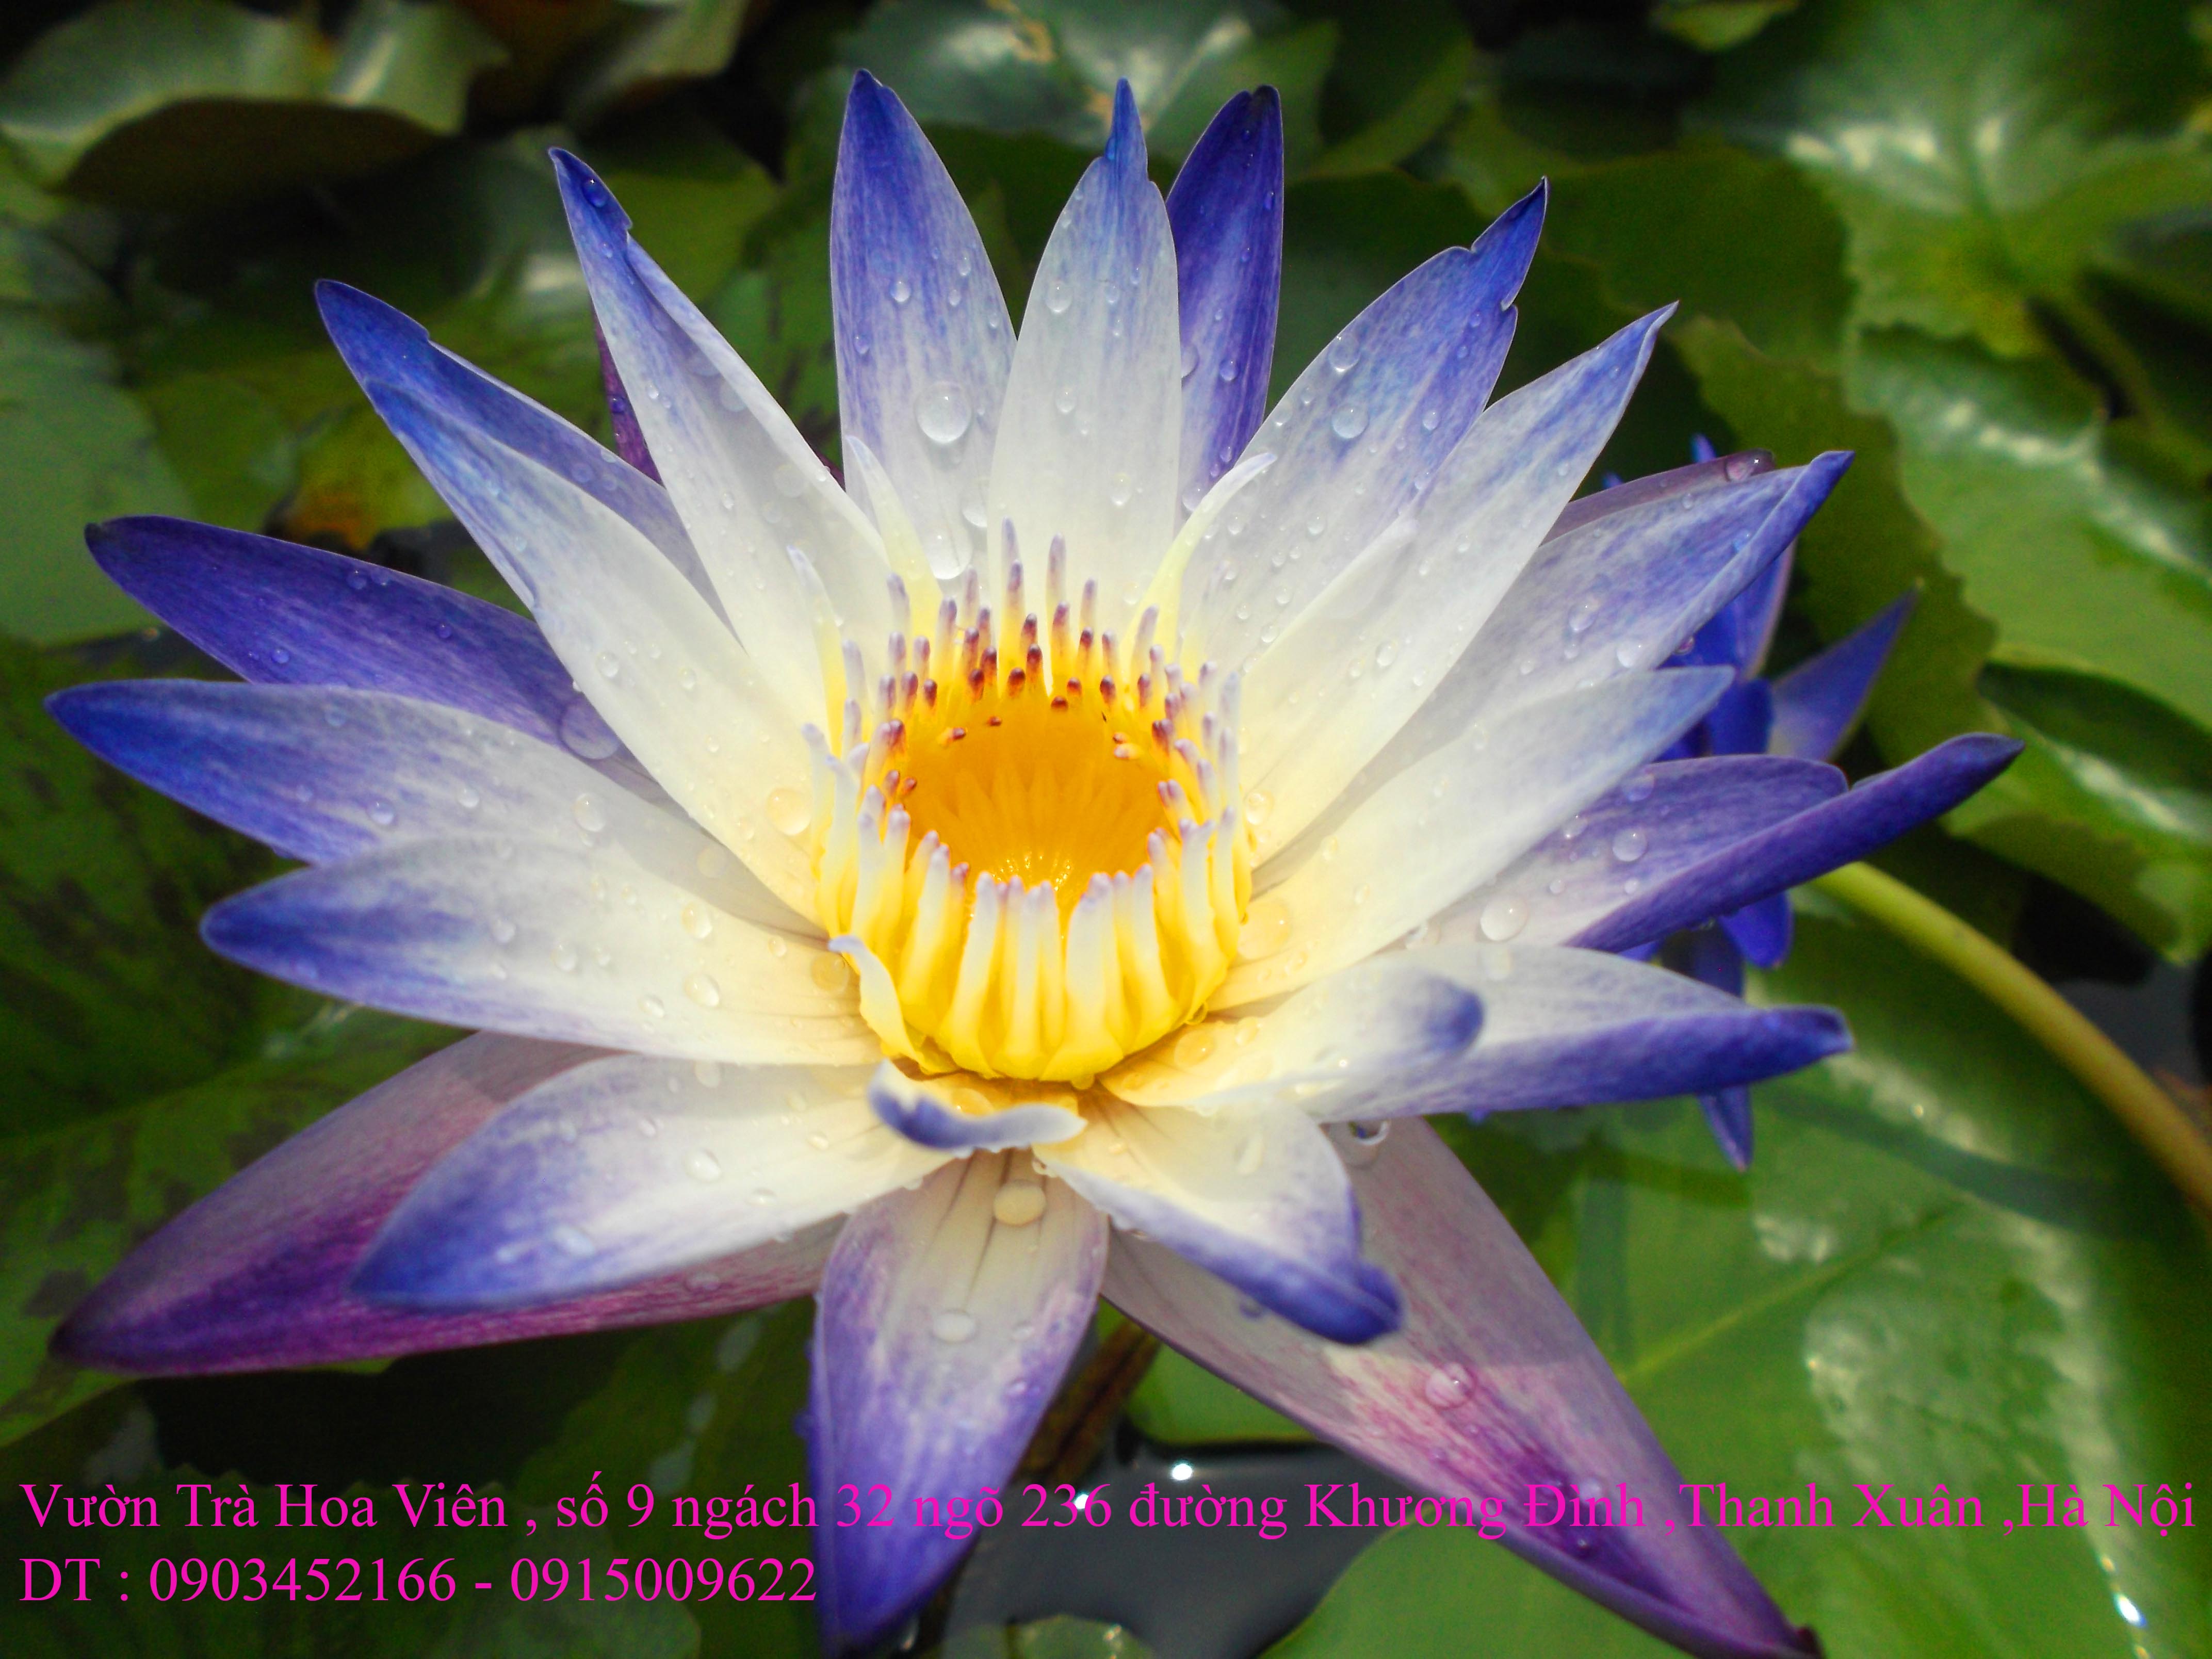 1 Bán hoa Súng Thái Lan , Mỹ , Úc với 120 màu sắc đẹp nở hoa bốn mùa Xuân , Hạ , Thu , Đông